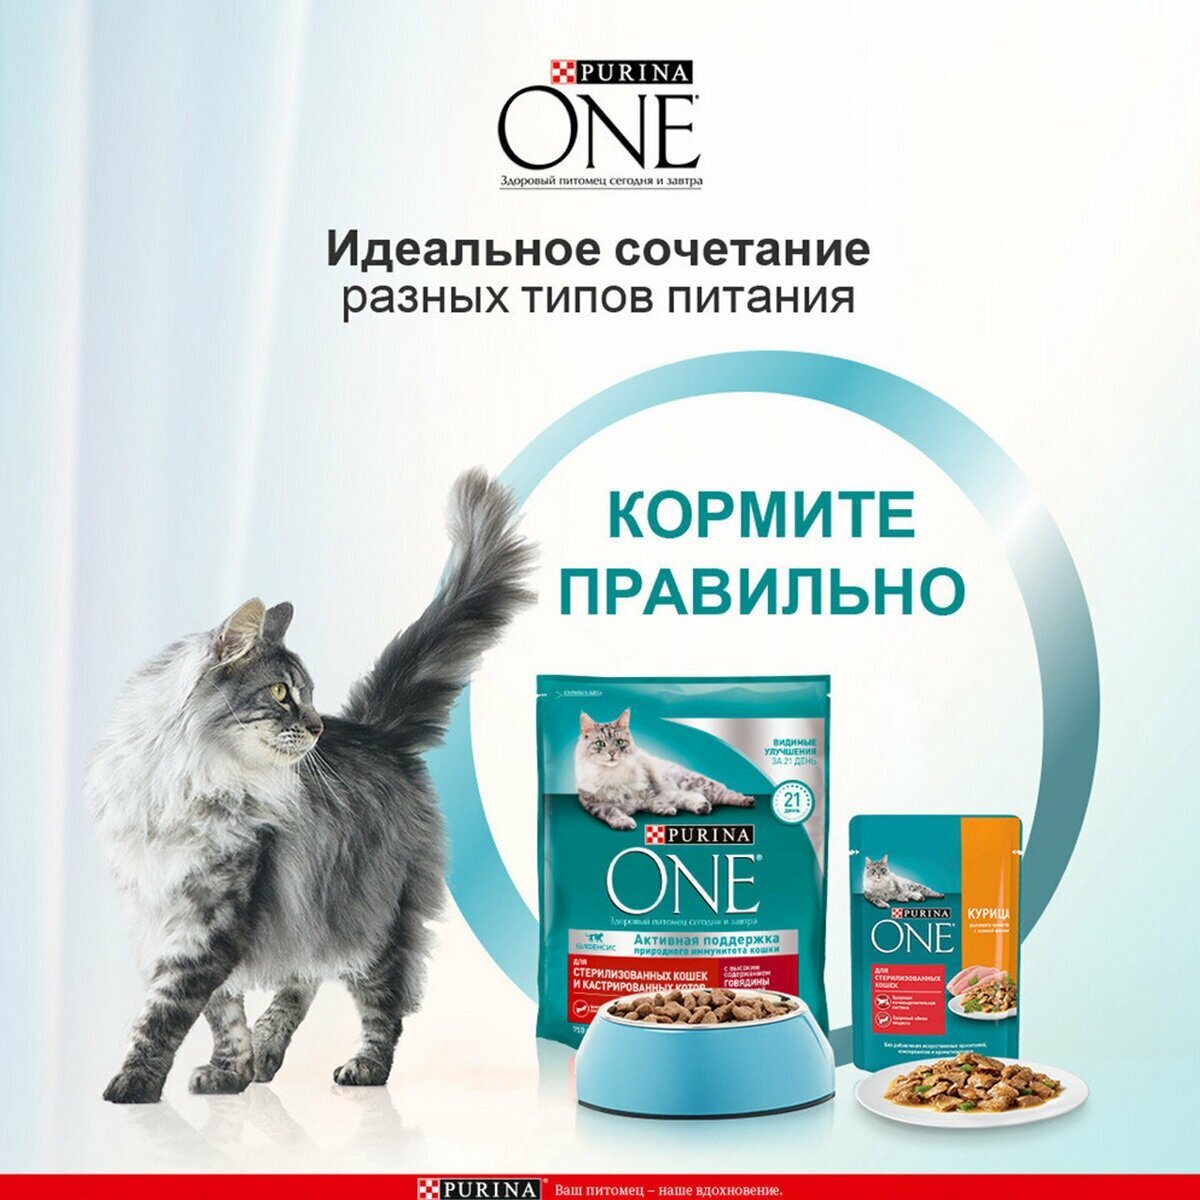 Purina One Сухой корм для стерилизованных кошек с говядиной и пшеницей, 3 кг - фото №17